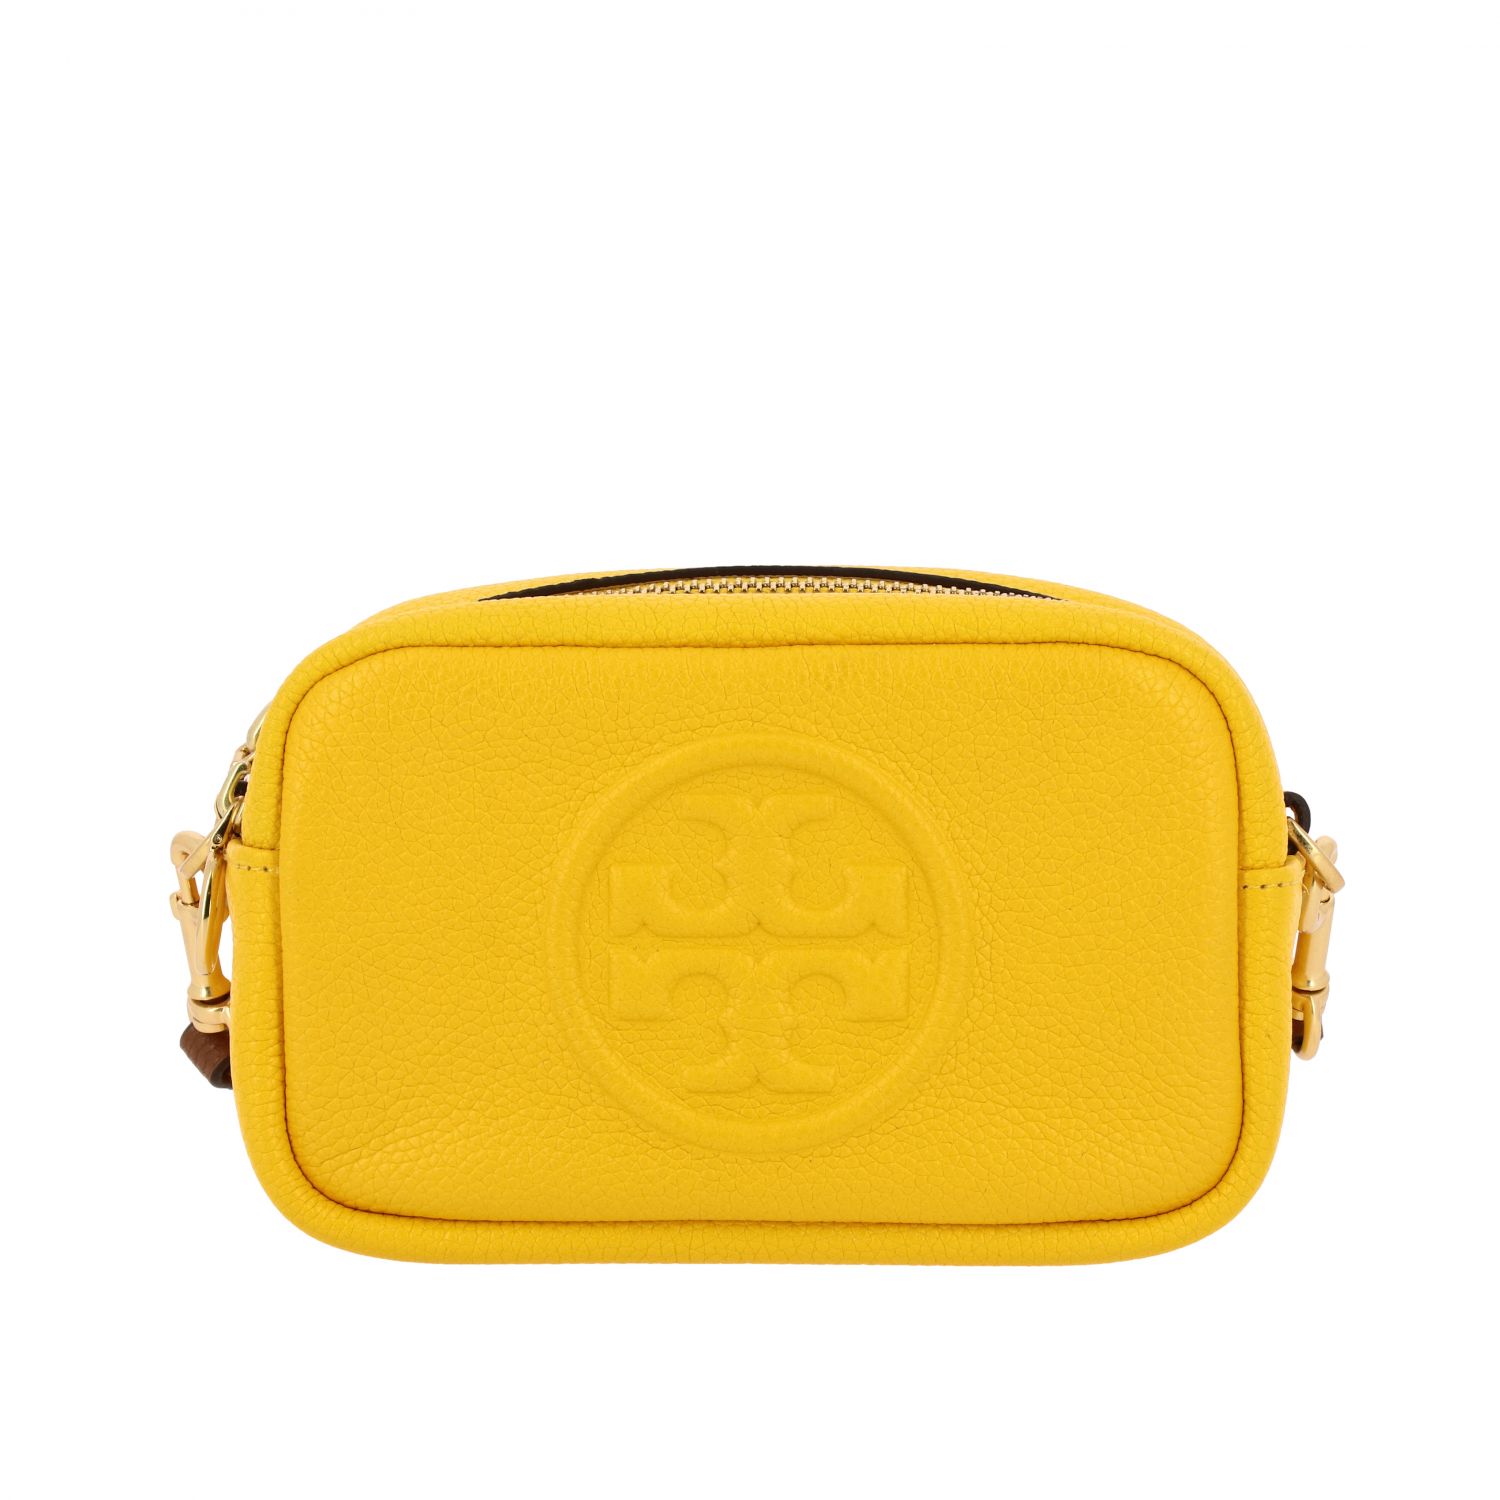 Tory Burch Outlet: Mini bag women - Yellow | Mini Bag Tory Burch 55691 ...